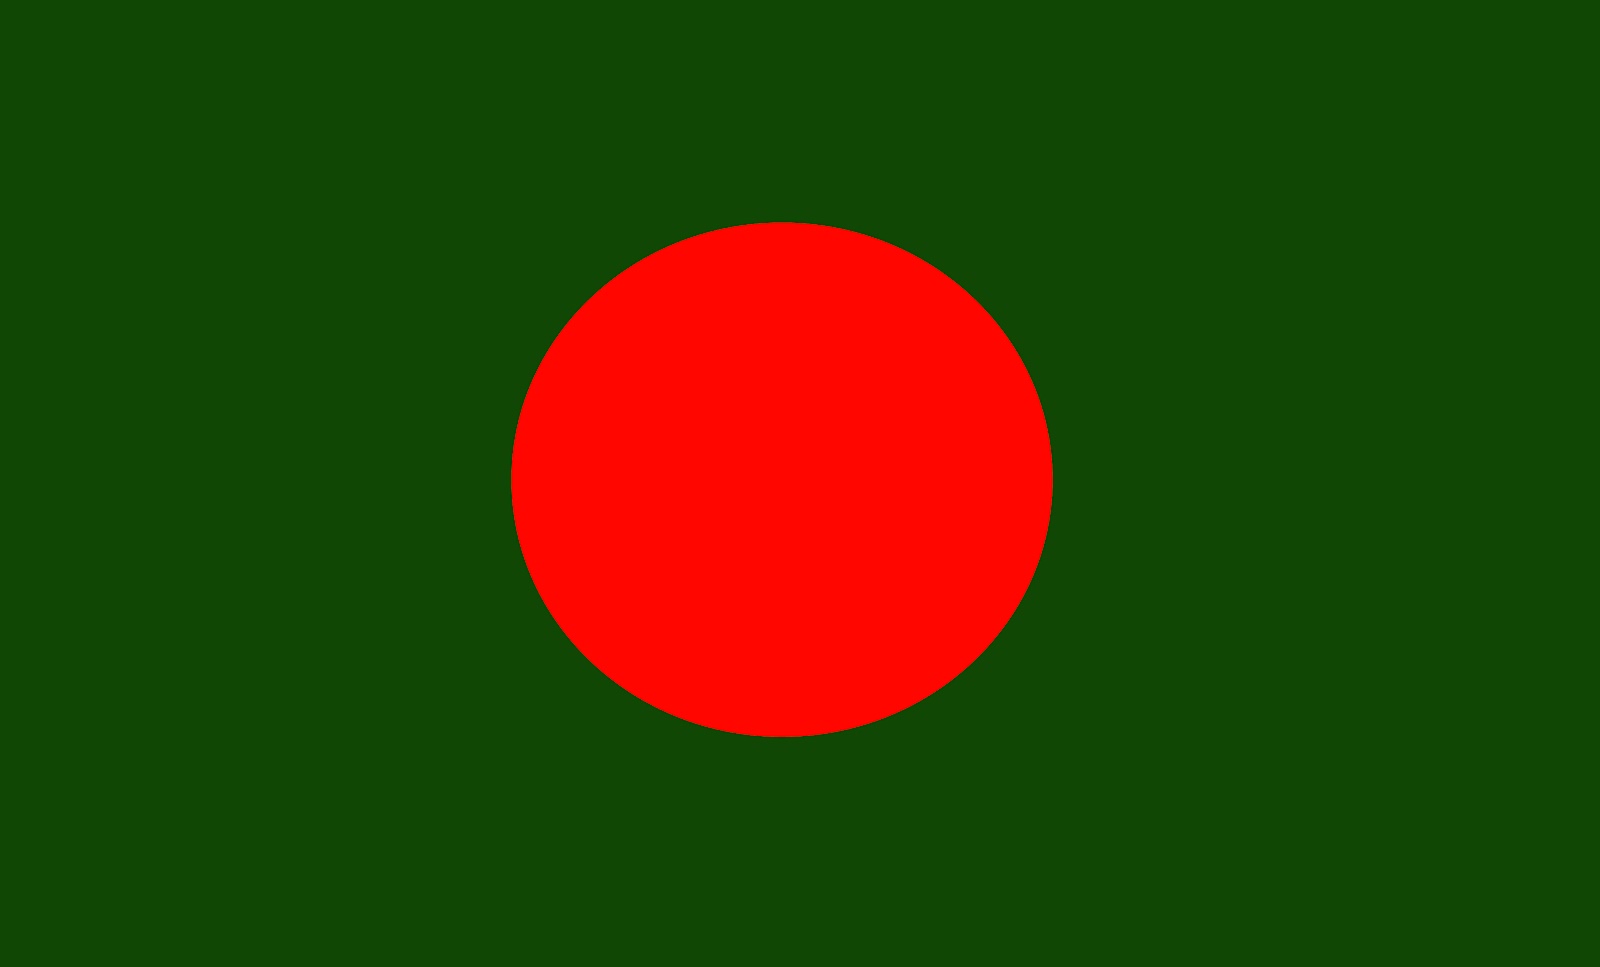 bangladesh flag wallpaper hd,green,red,flag,circle,colorfulness